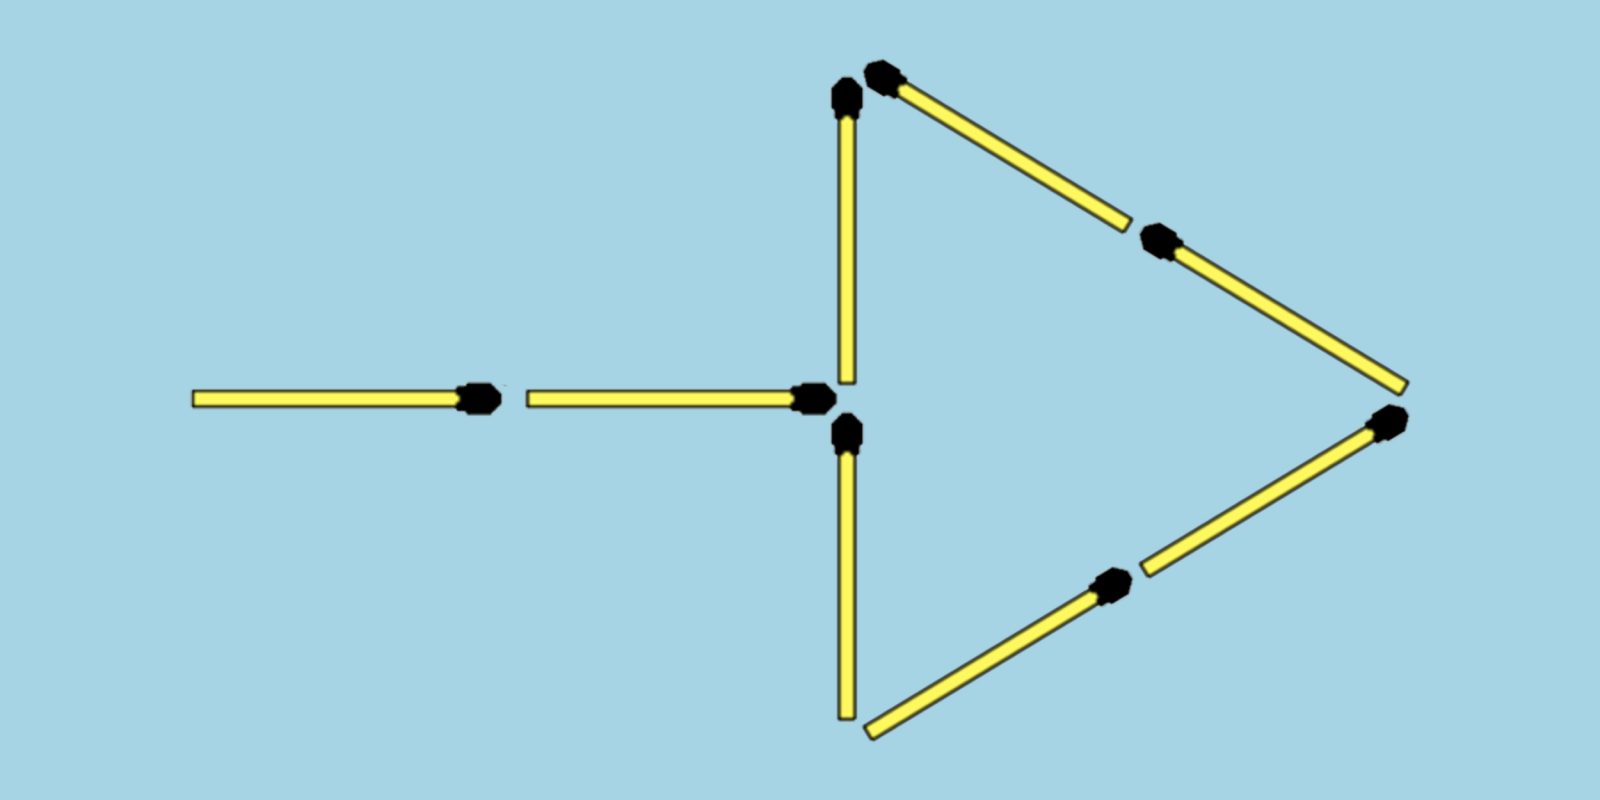 Передвинь одну спичку чтобы получился квадрат ответ фото треугольник